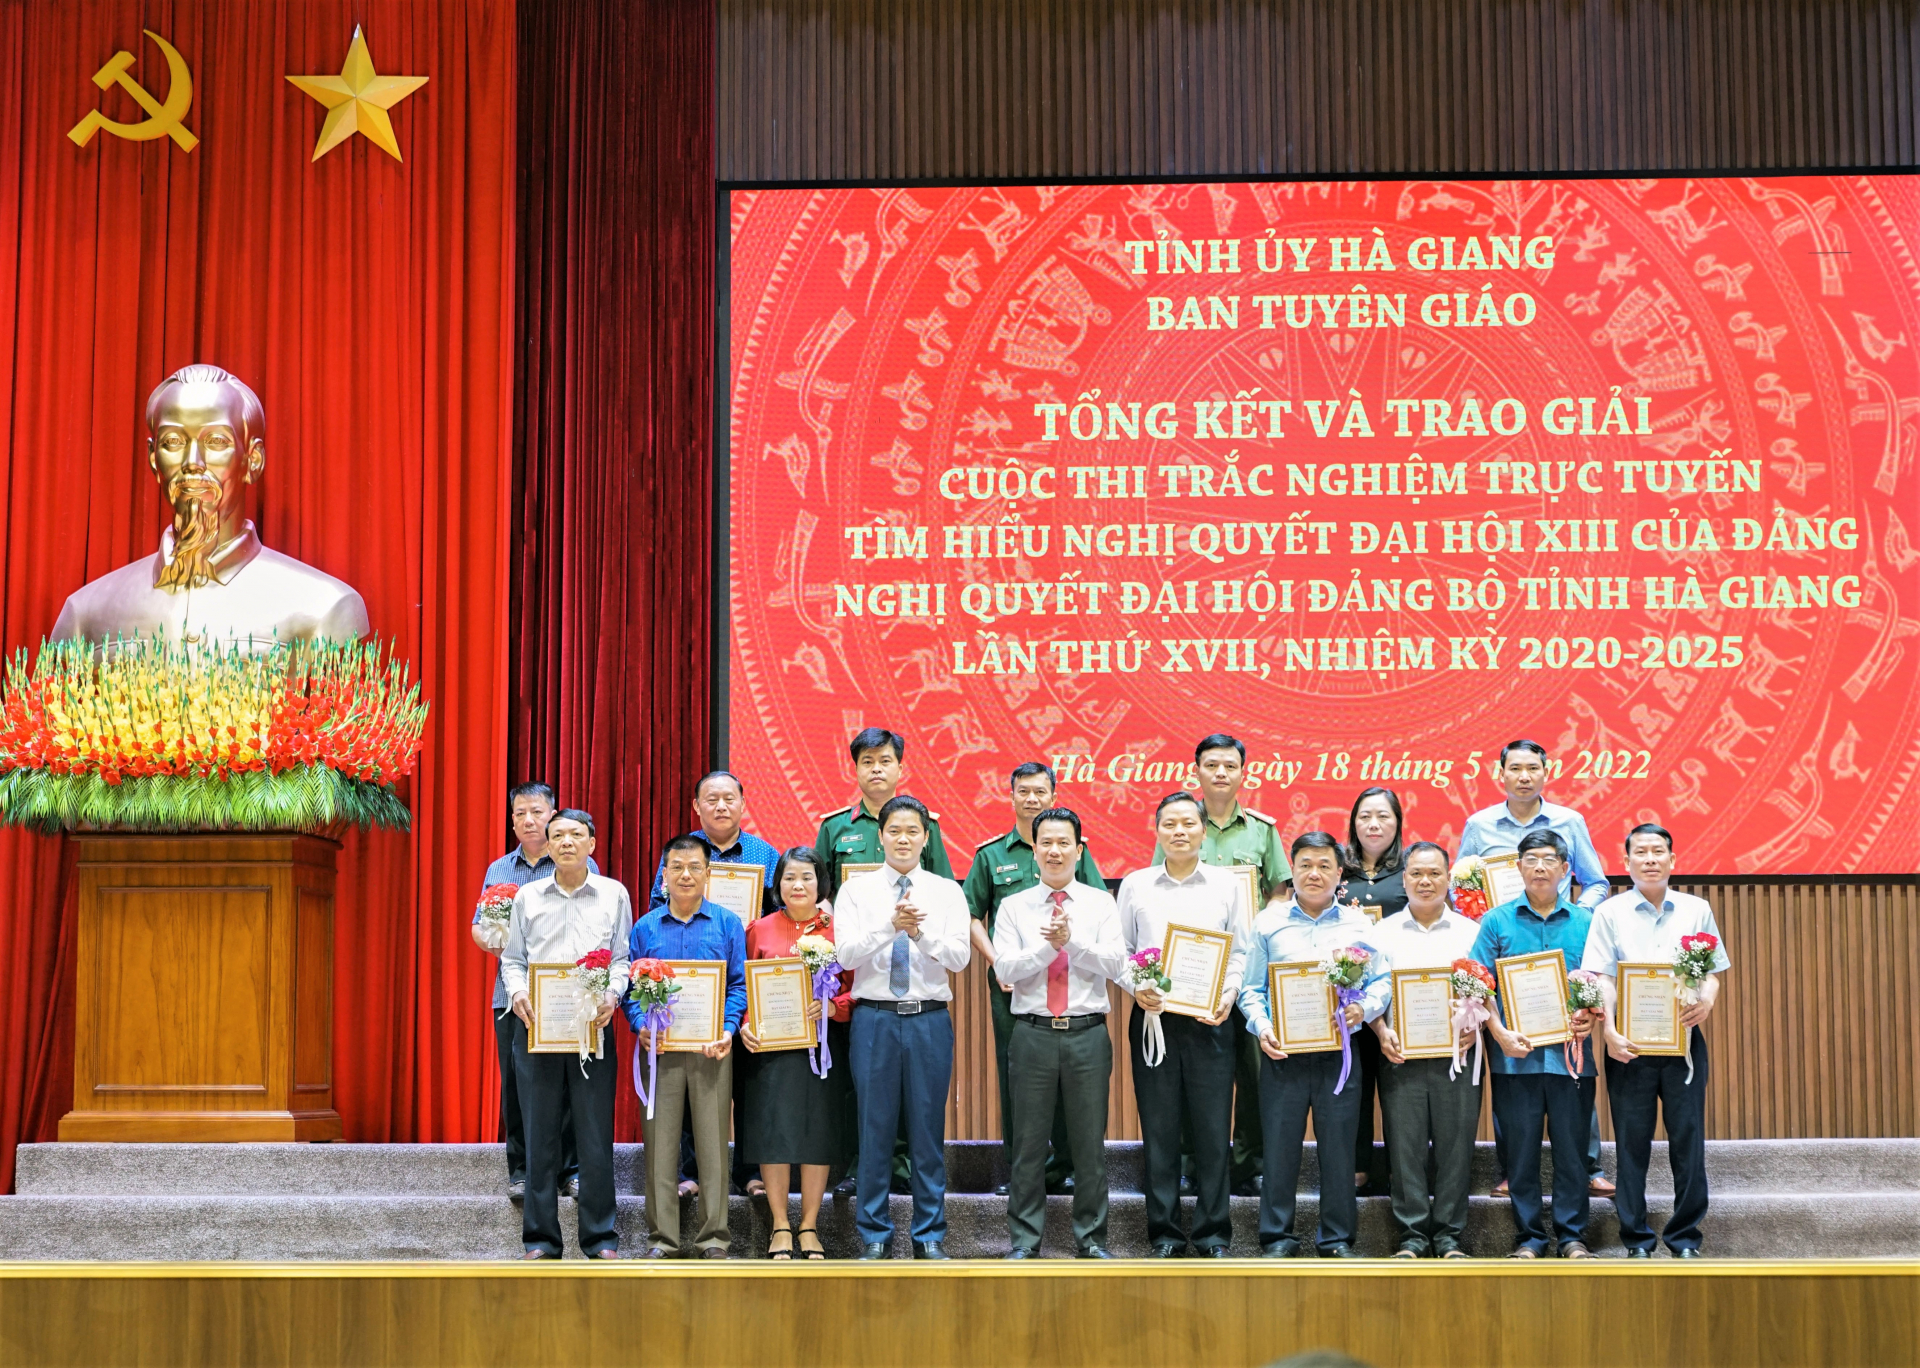 Bí thư Tỉnh ủy Đặng Quốc Khánh và Trưởng ban Tuyên giáo Tỉnh ủy Vũ Mạnh Hà trao giải Nhất cho tập thể đạt giải.